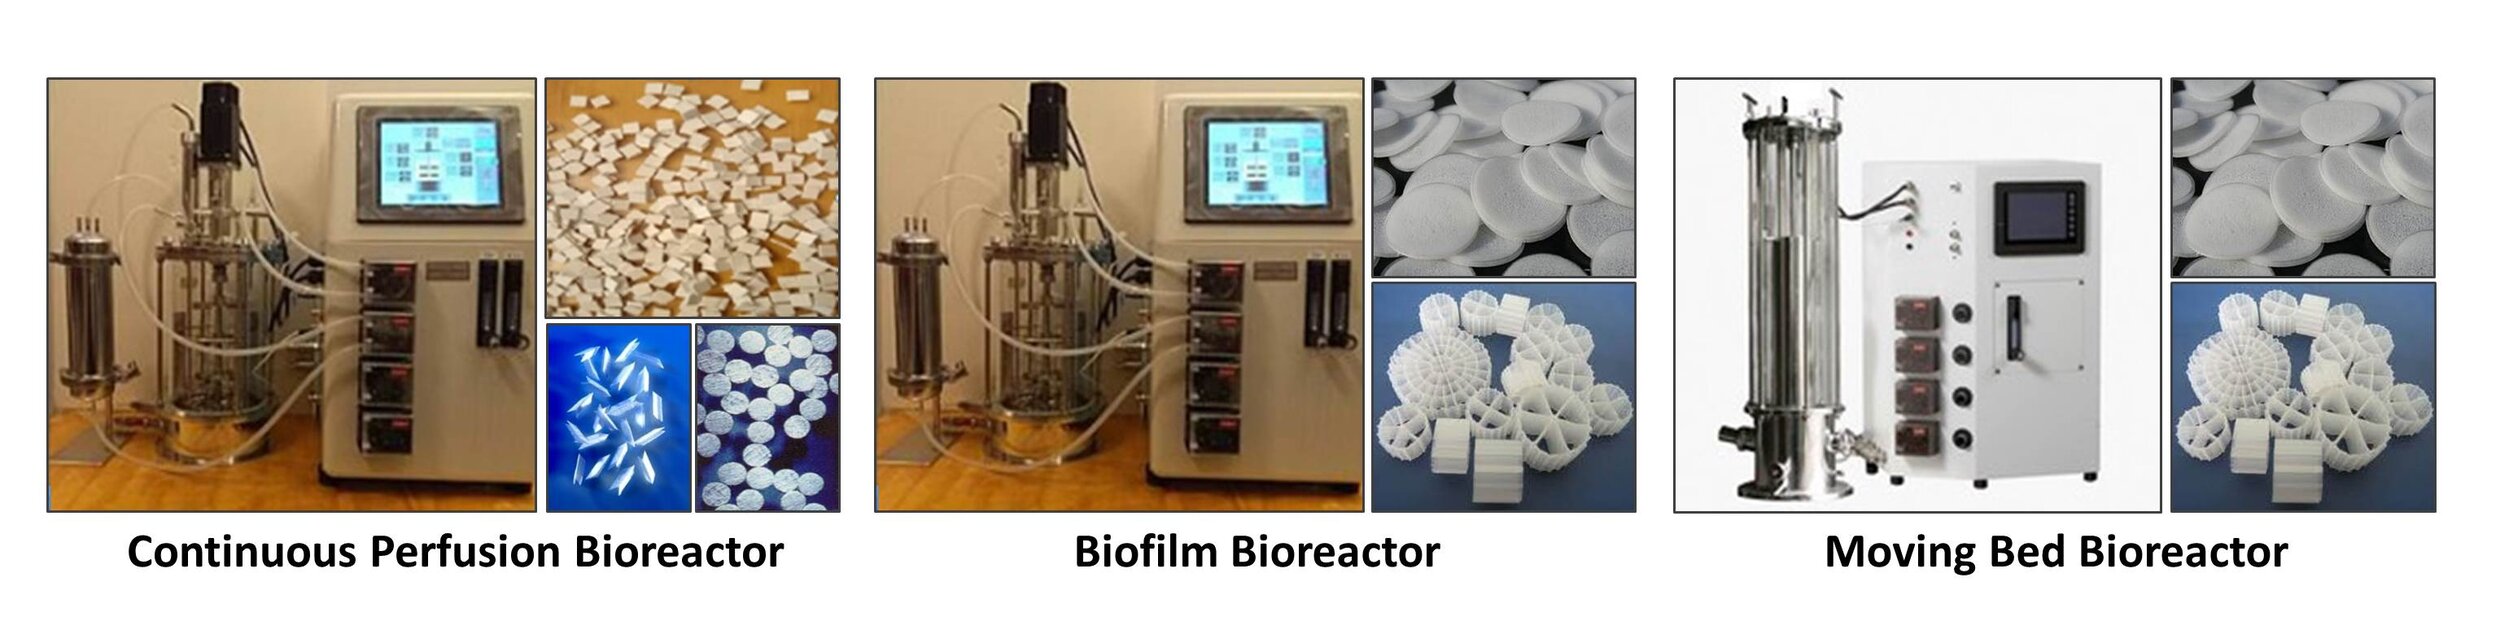 Perfusion-Biofilm-MB_Bioreactors.jpg